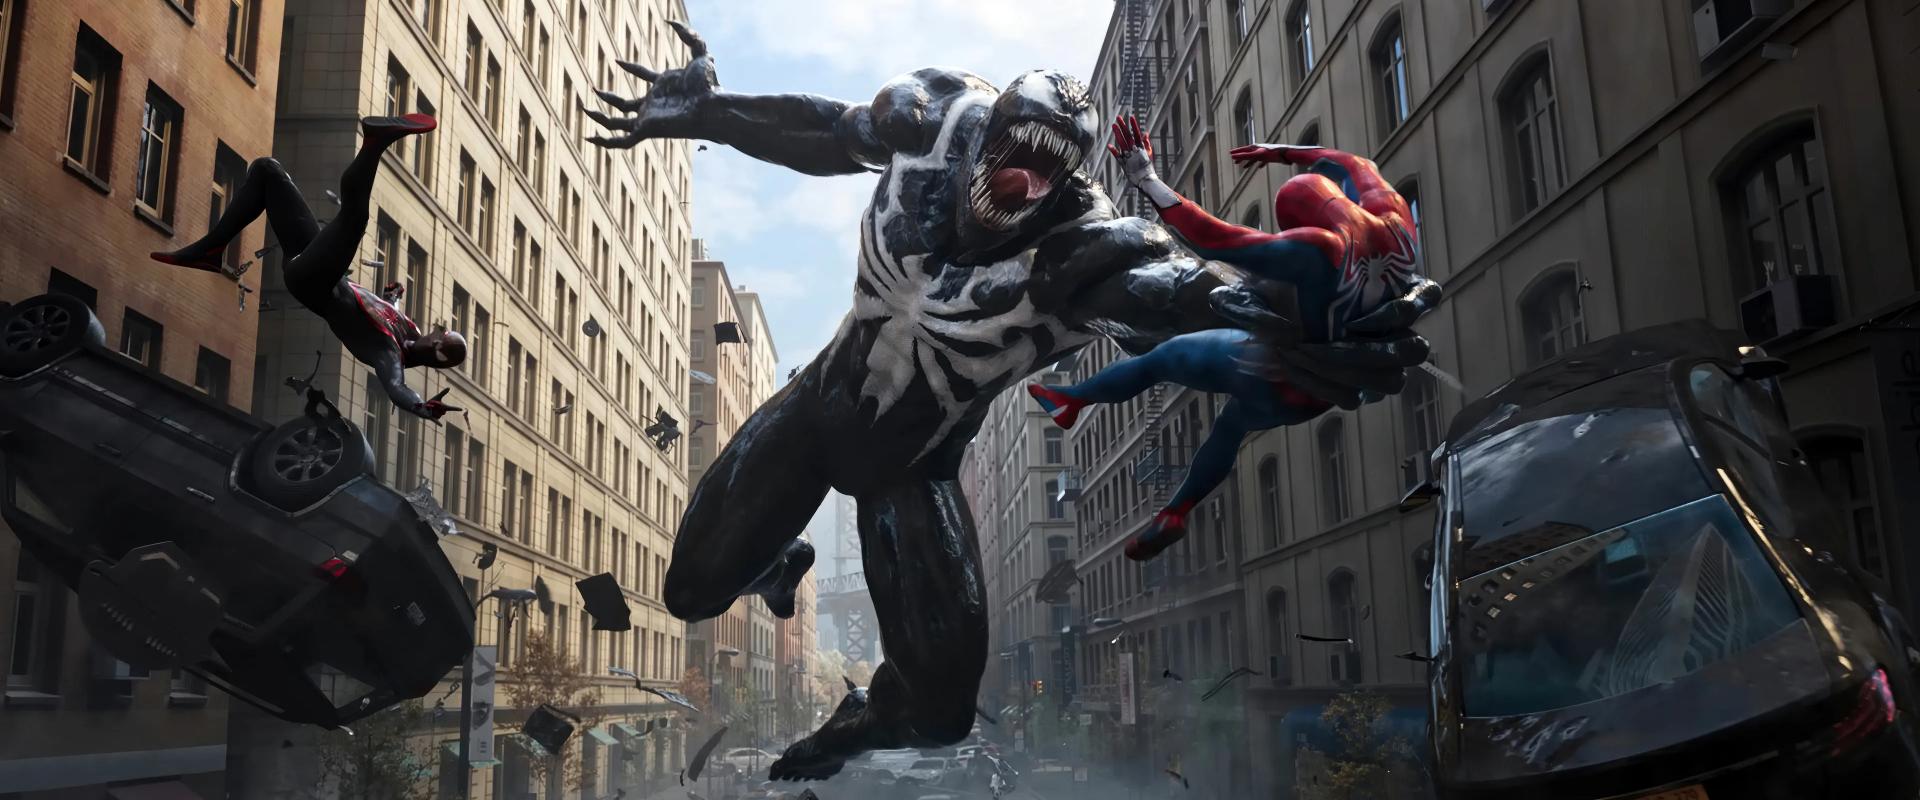 107 nap alatt beváltotta a hozzáfűzött reményeket a Marvel's Spider-Man 2